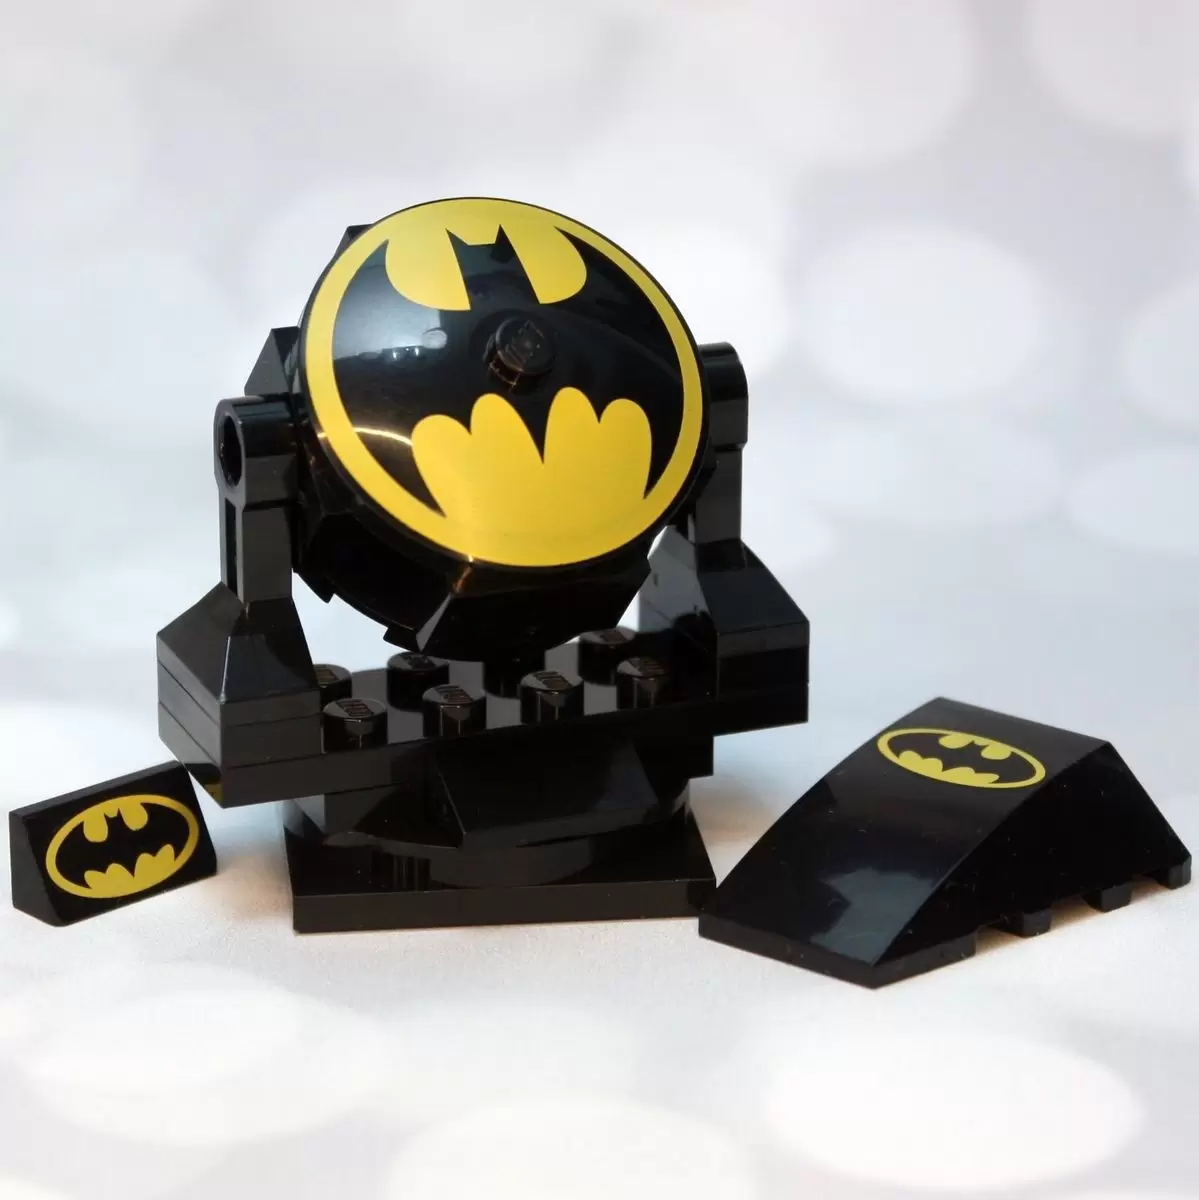 Batman Bat Signal - LEGO DC Comics Super Heroes set